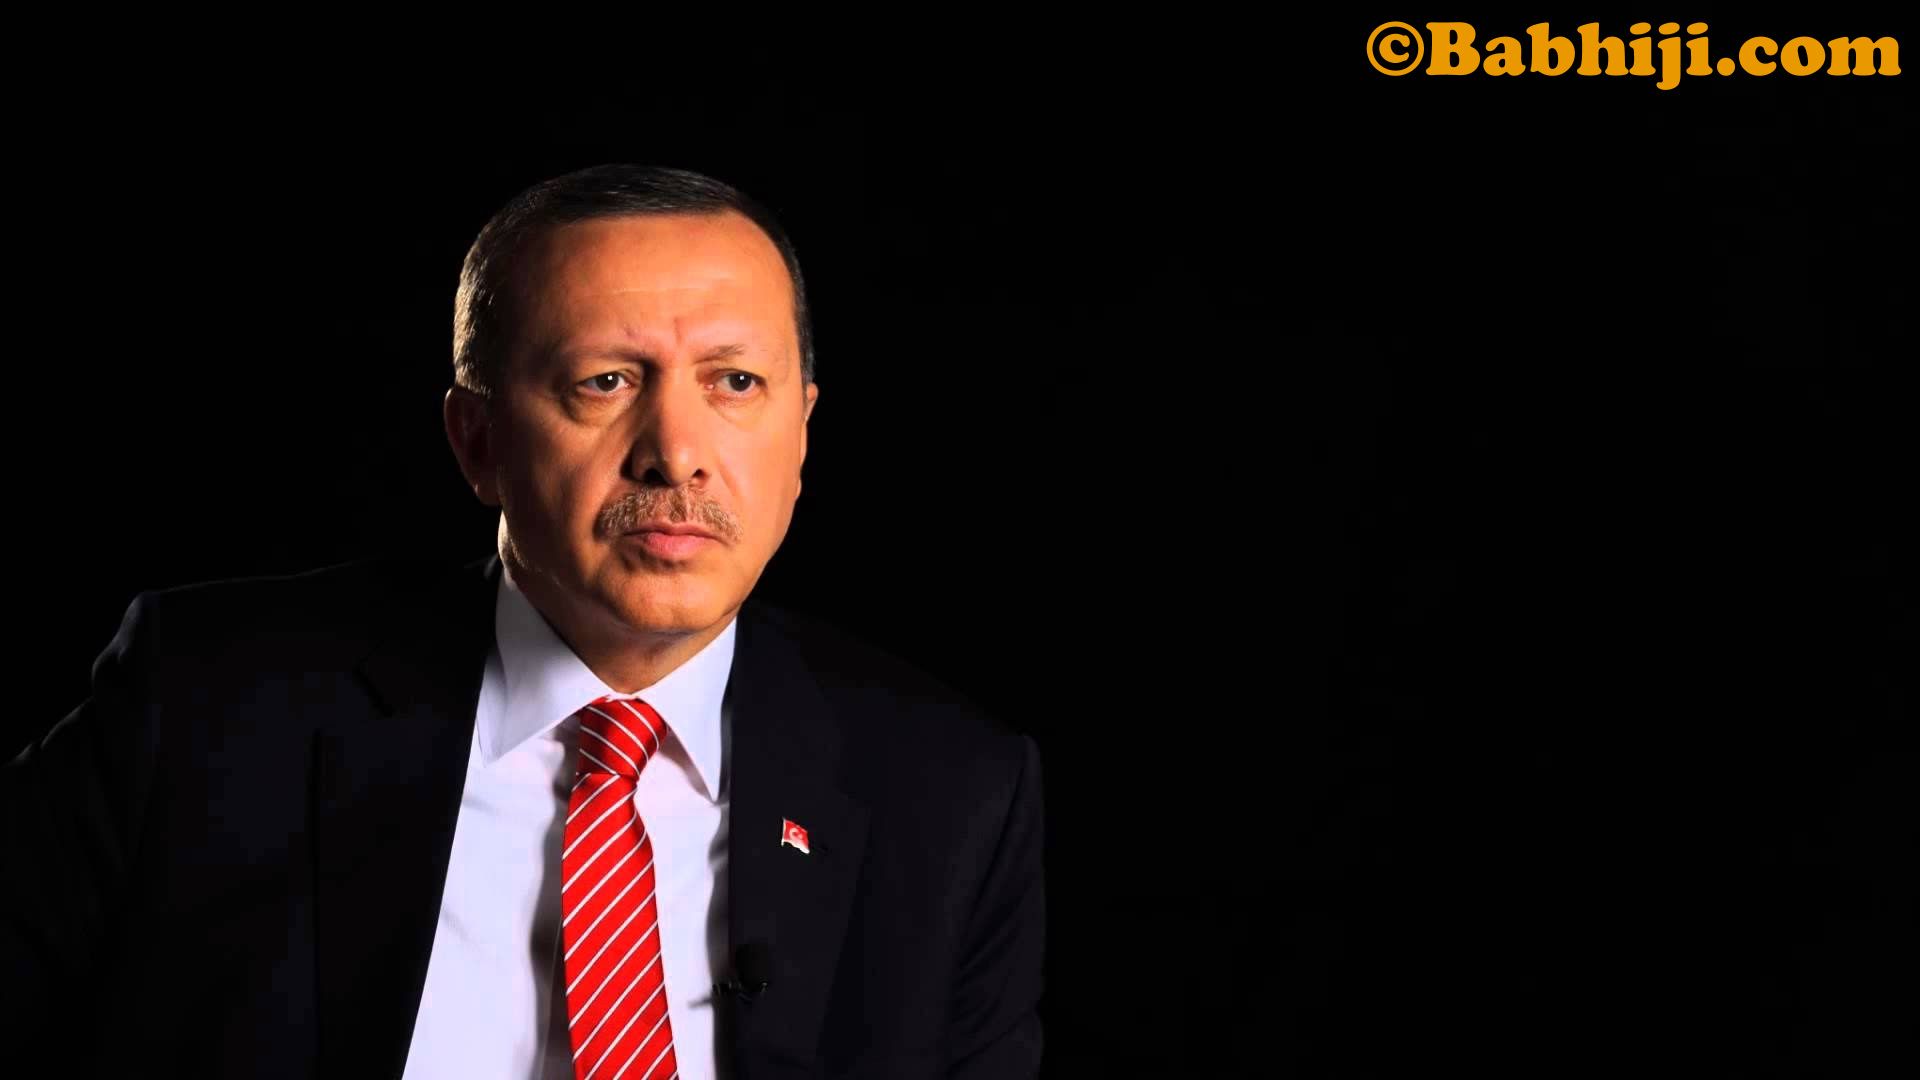 Recep Tayyip Erdoğan, Recep Tayyip Erdoğan Image, Recep Tayyip